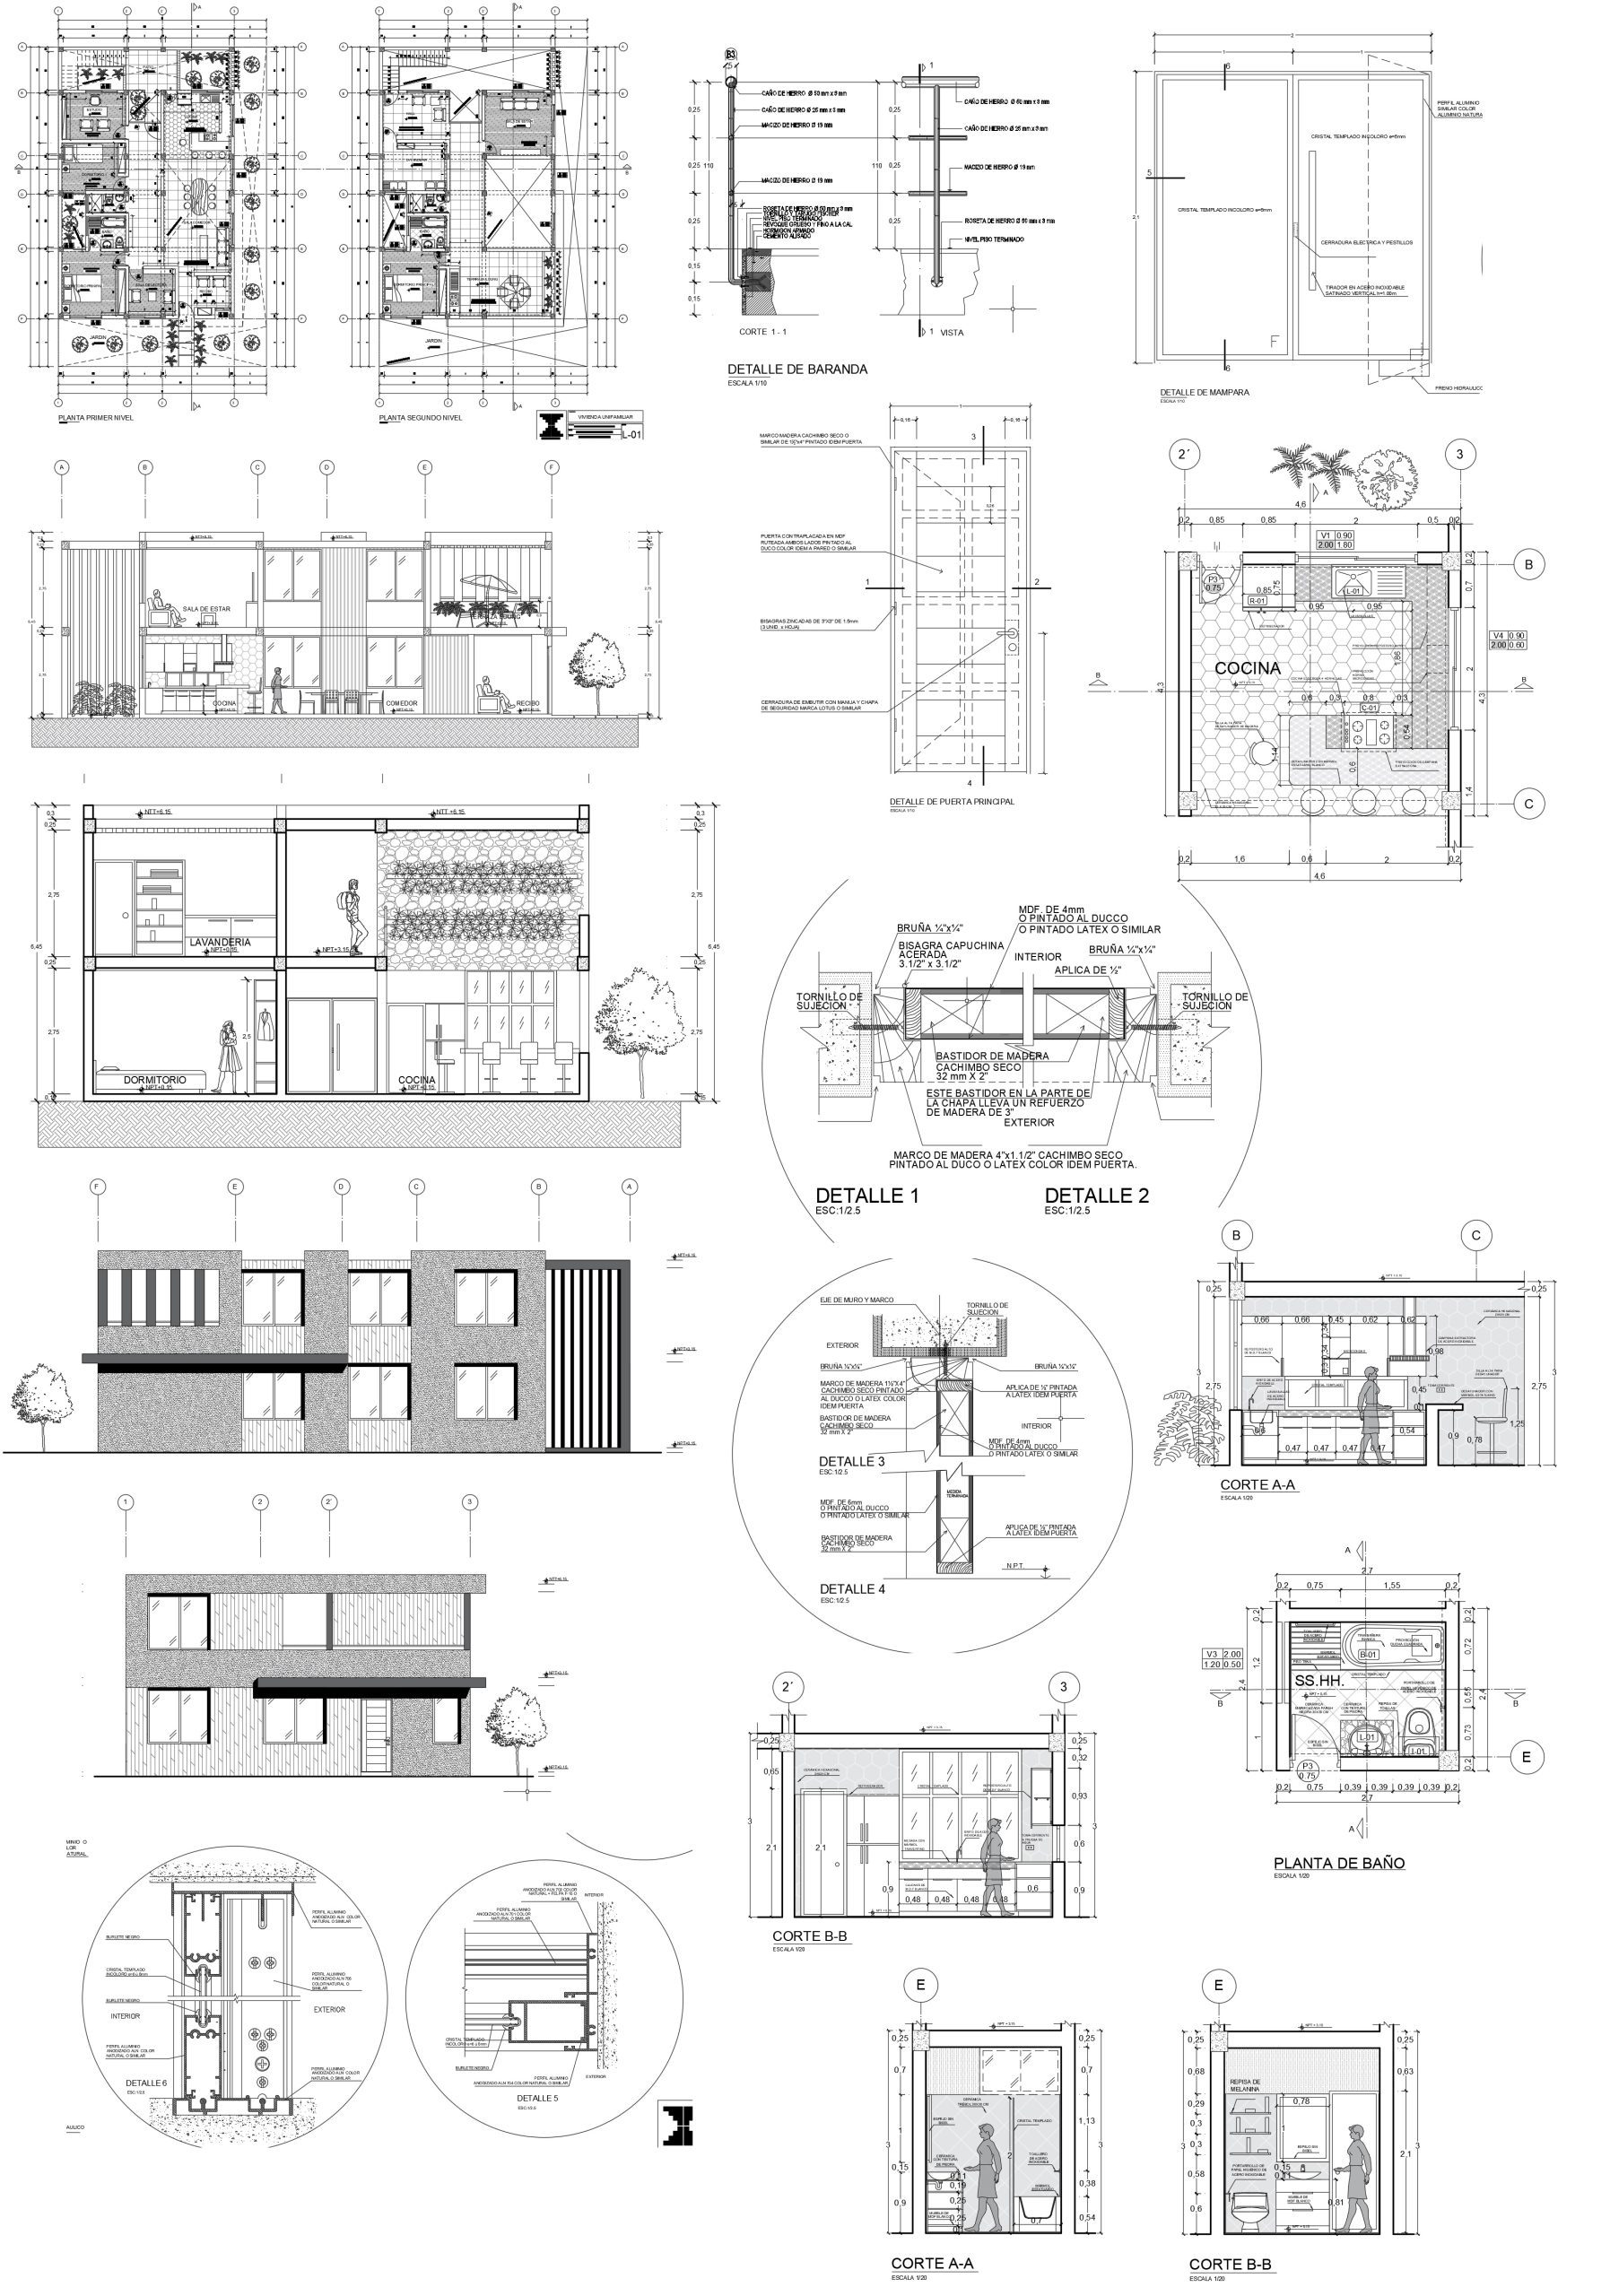 Projet architectural de logement unifamilial